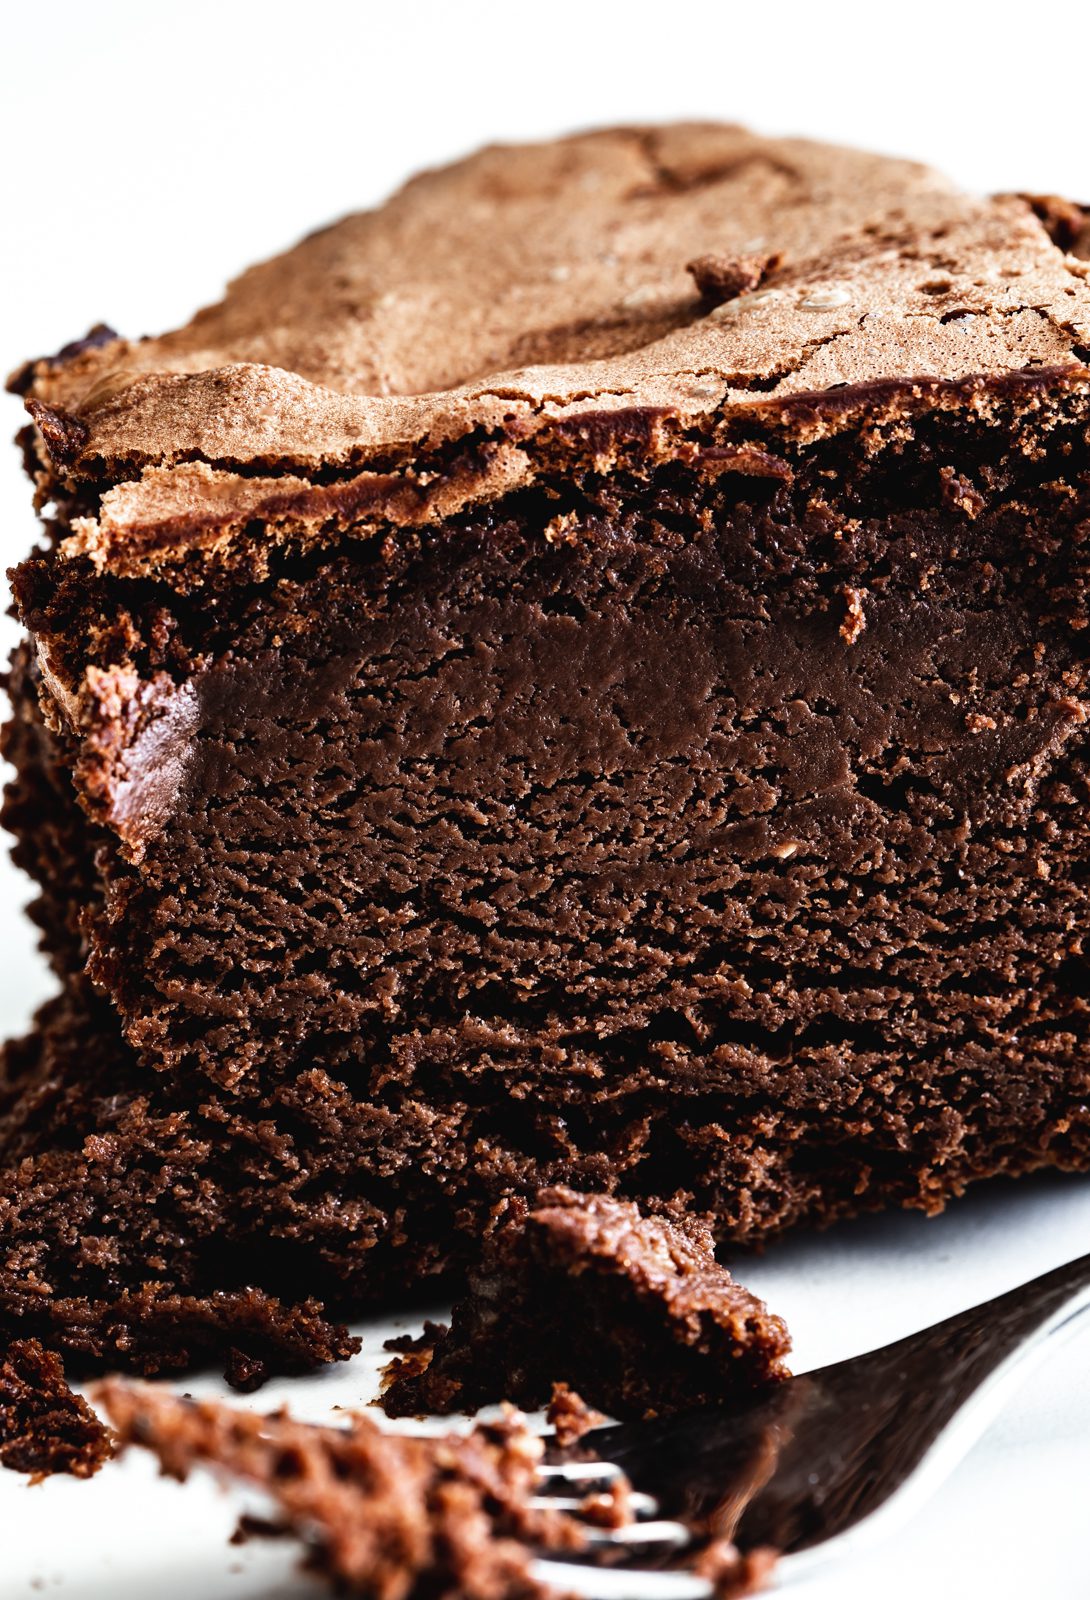 עוגת מוס שוקולד אפויה ללא קמח-שני סנדרס